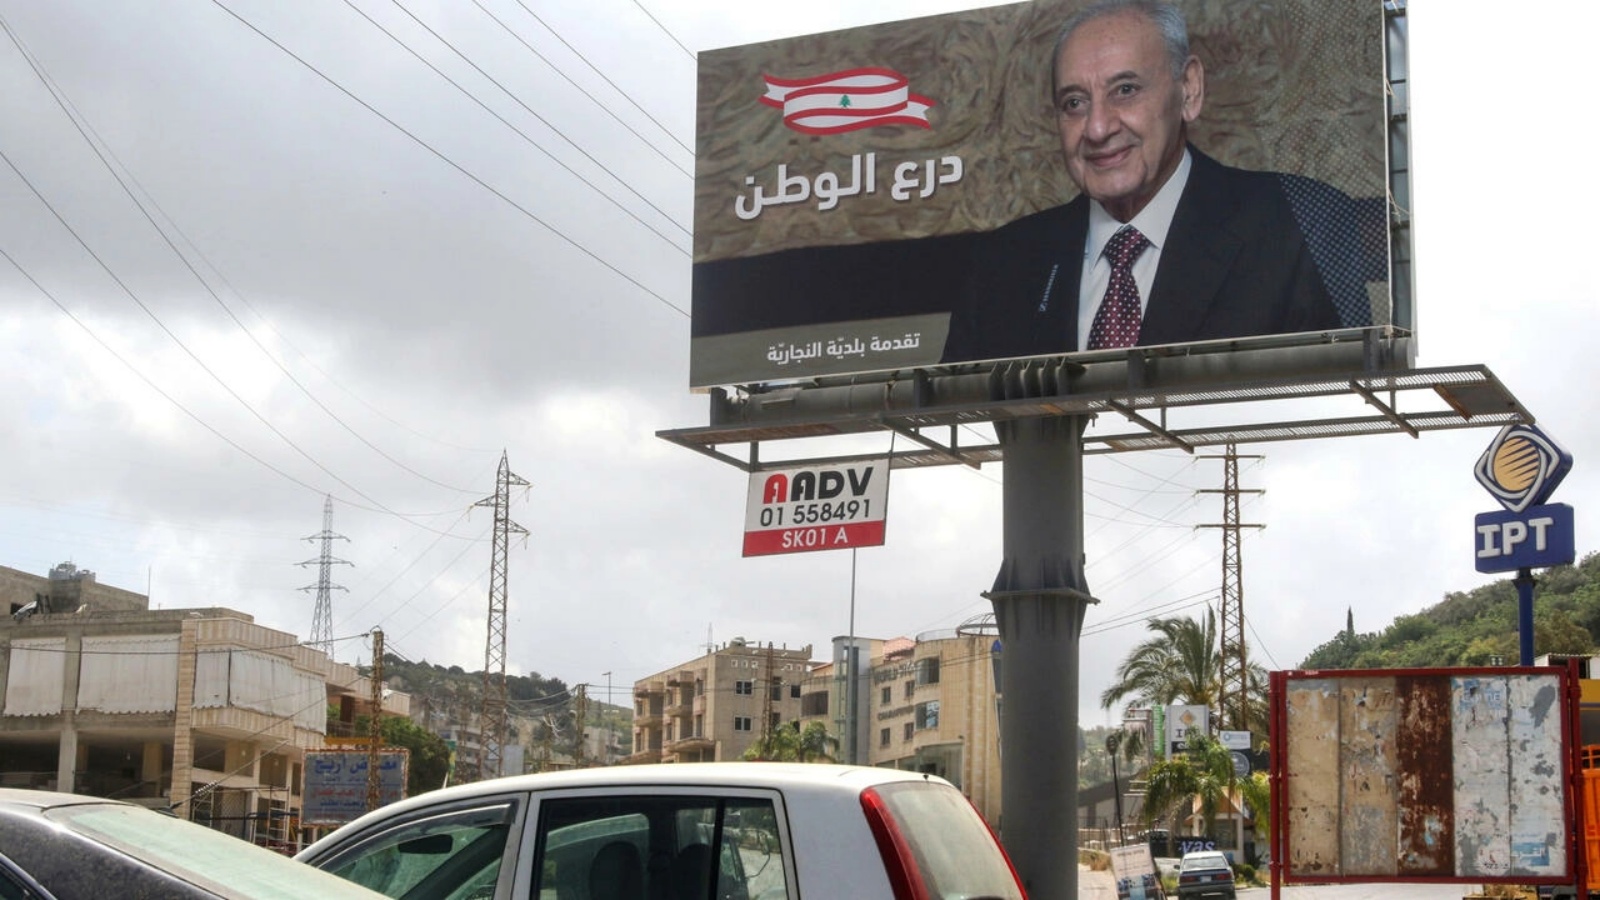 صورة لدعاية انتخابية لرئيس المجلس النيابي اللبناني نبيه بري المرشح الى الانتخابات التشريعية التقطت في الخامس من مايو 2022